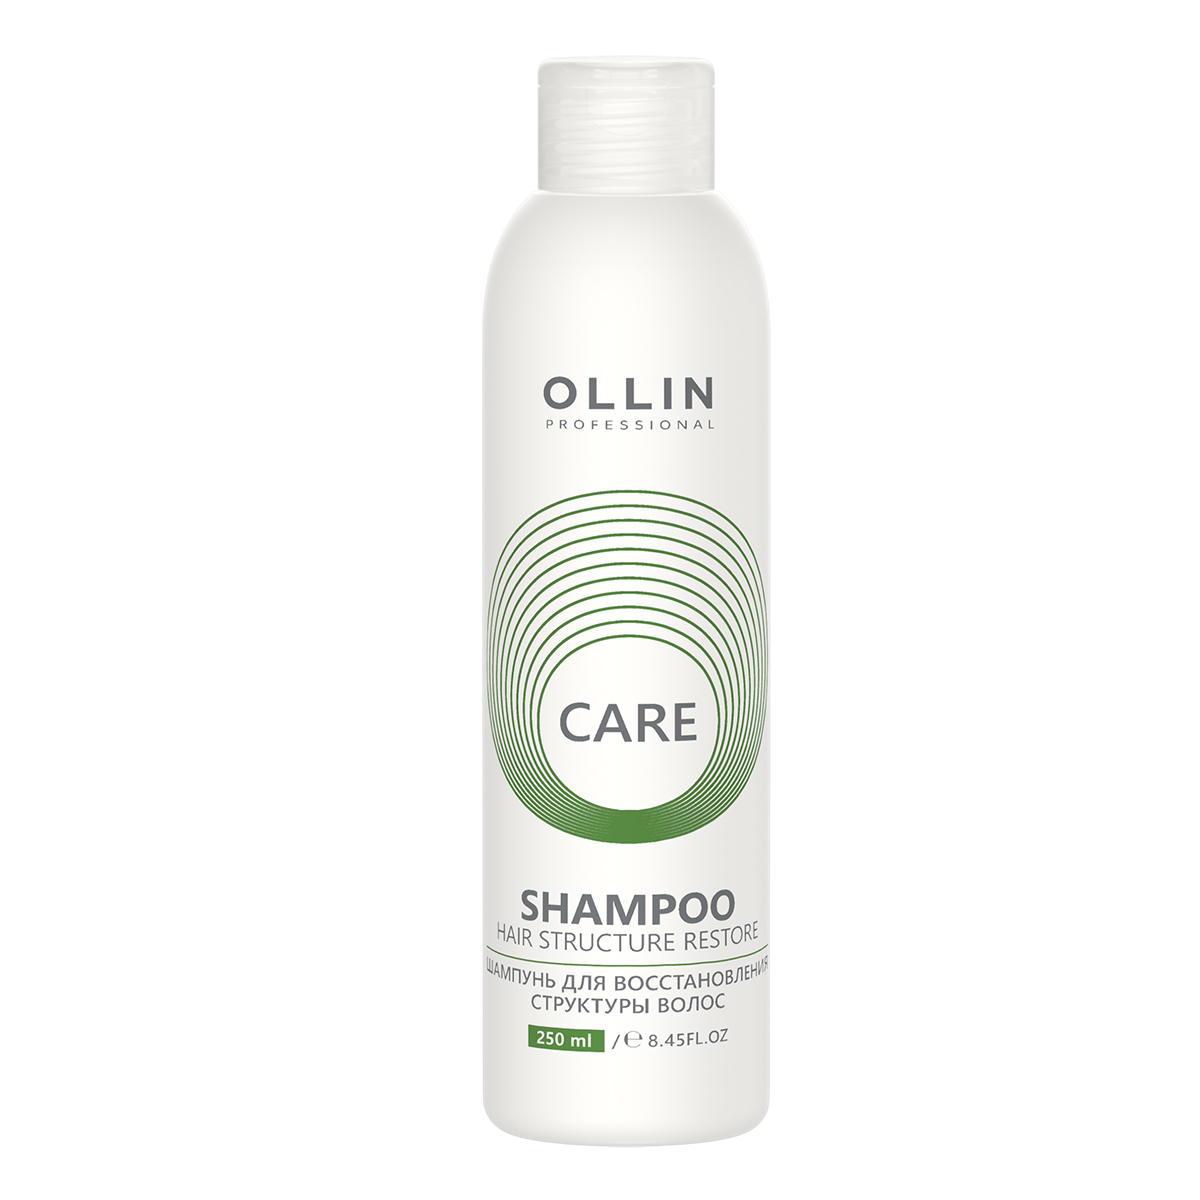 Купить Care Шампунь для восстановления структуры волос, 250 мл, OLLIN, OLLIN Professional